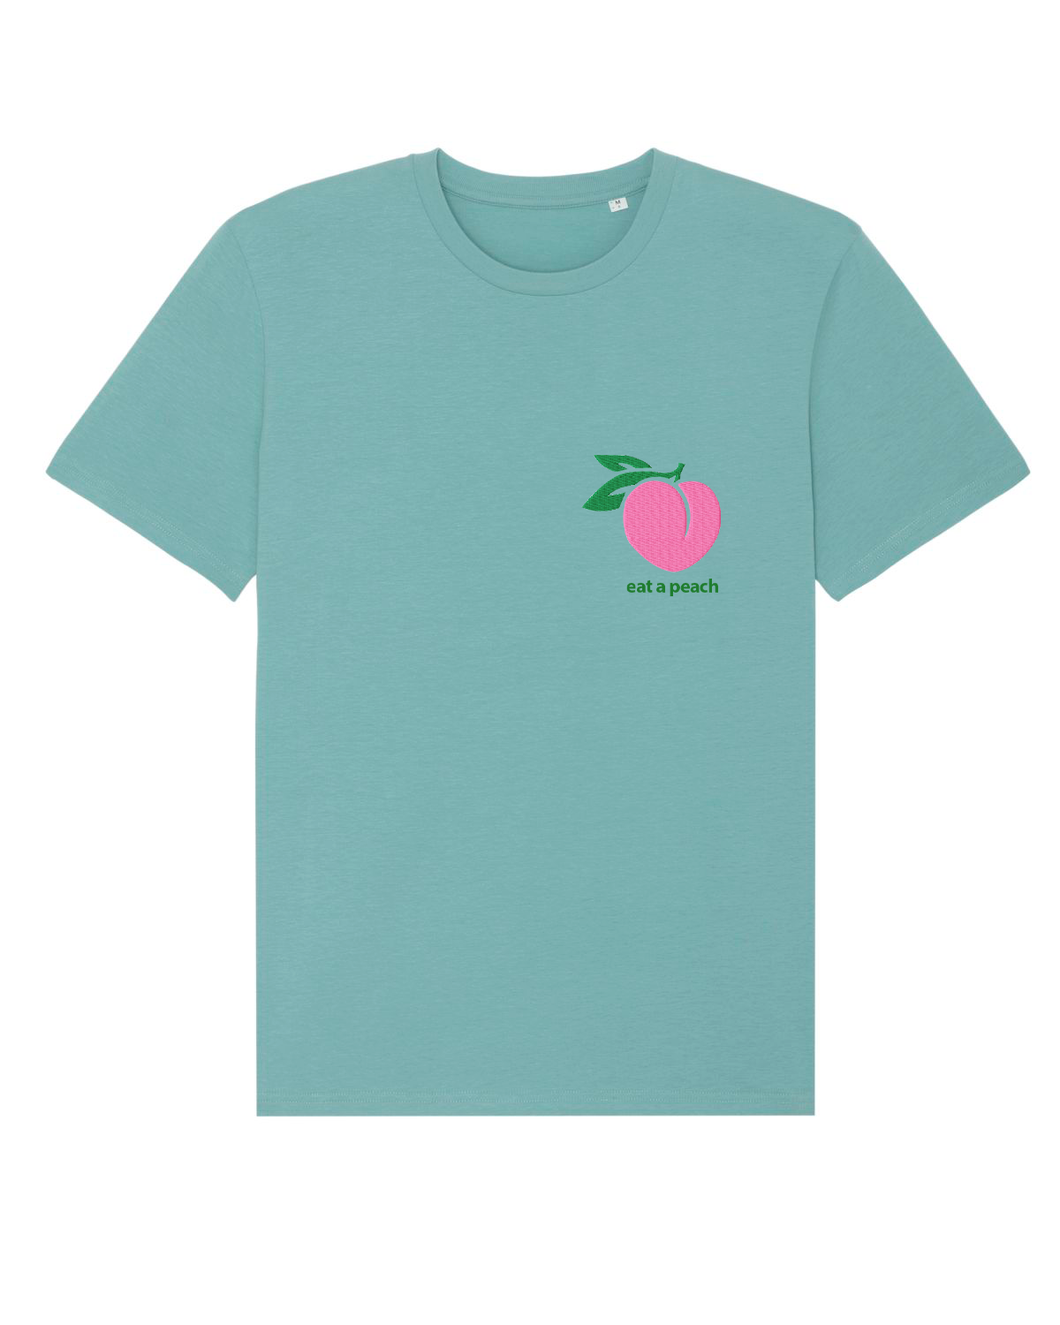 Eat a Peach - T-Shirt - Teal